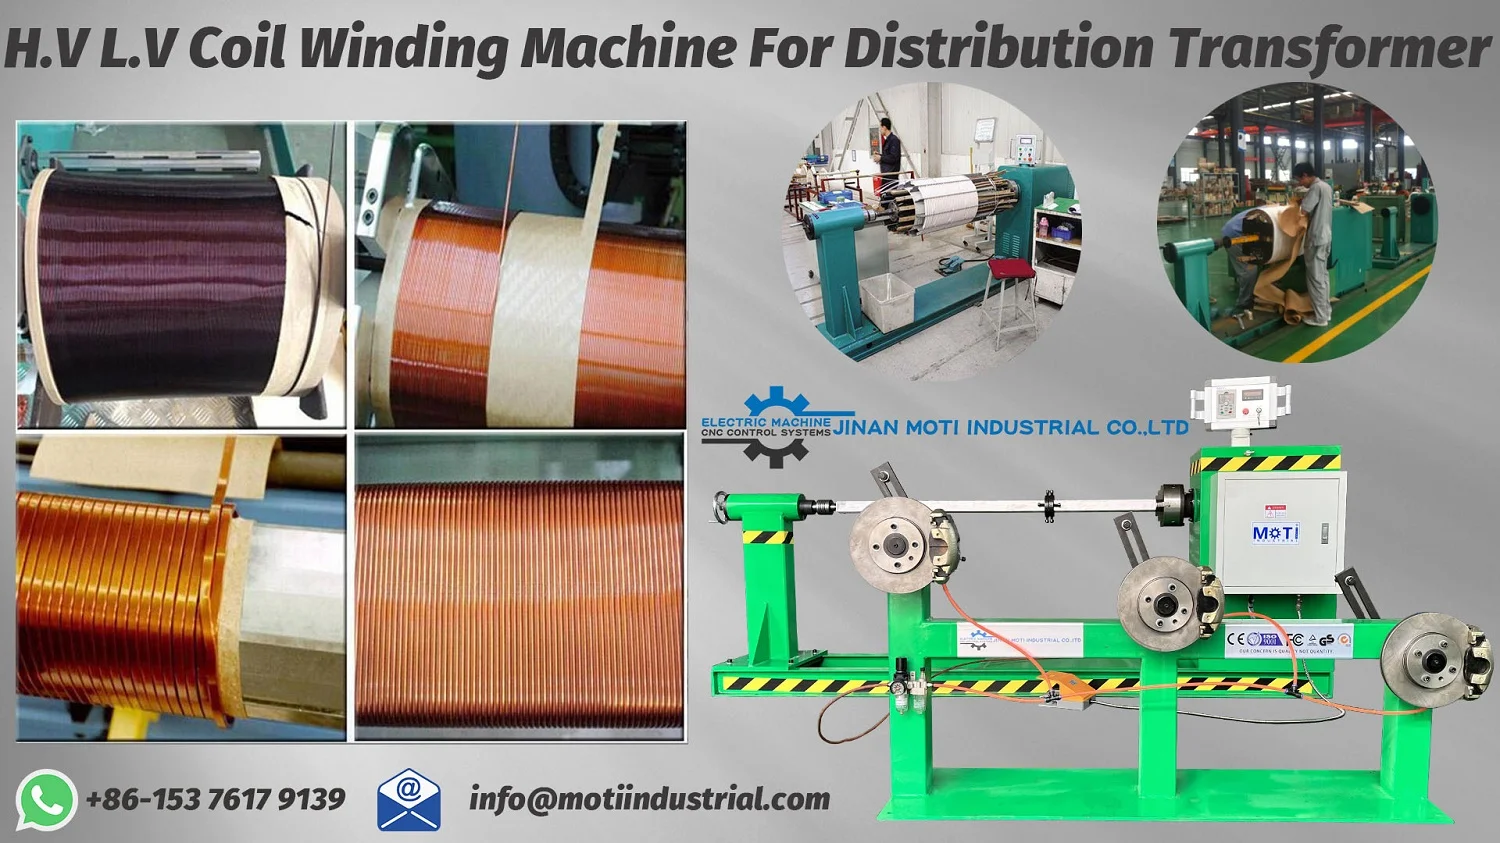 H.V L.V Coil Winding Machine For Distribution Transformer 2023-01-24 1500.webp